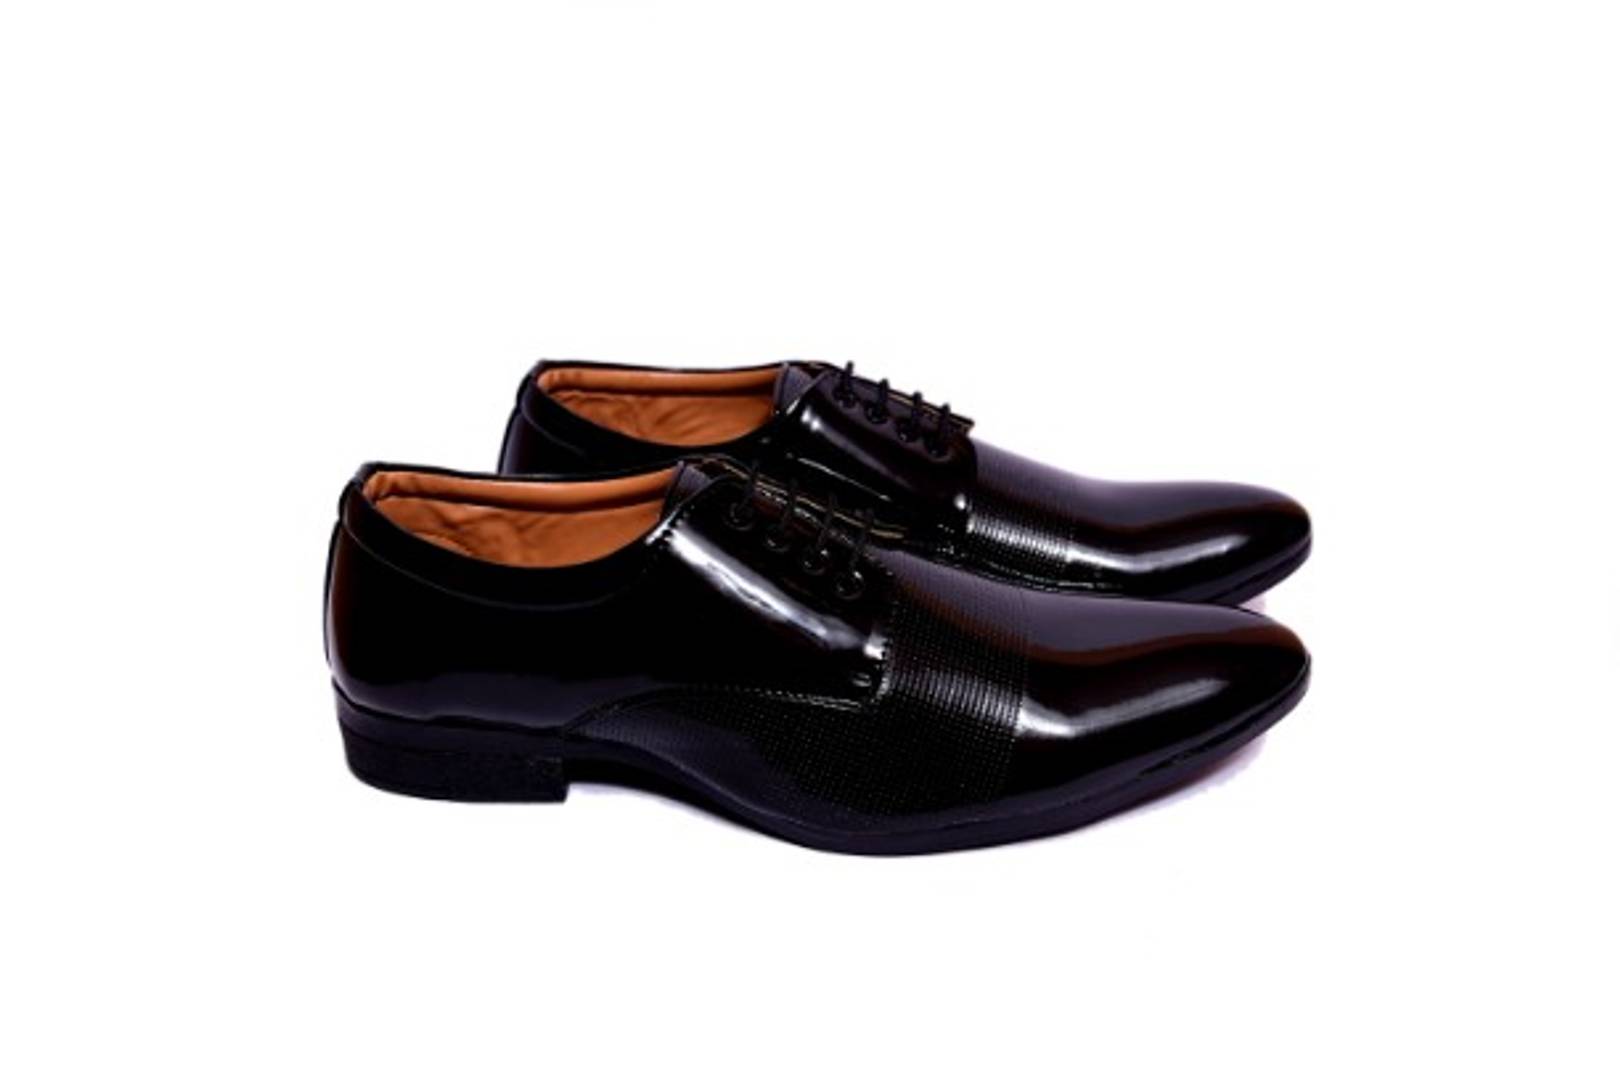 Elegant Black Patent Leather Formal Shoes For Men